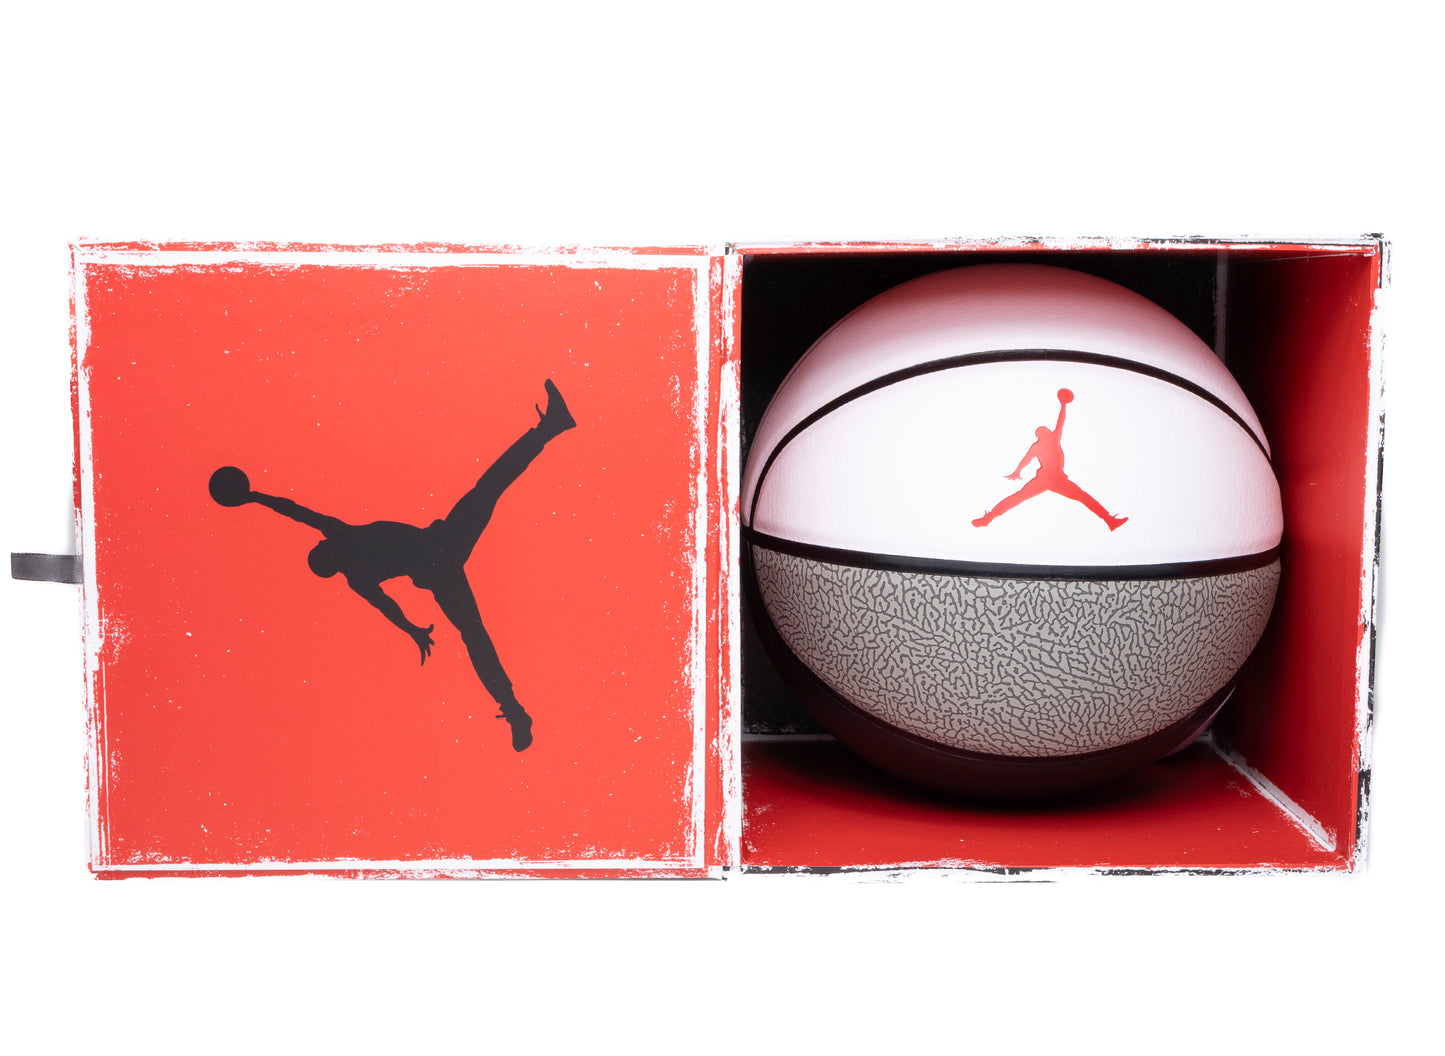 Air Jordan Premium Basketball 'Black Cement Reimagined'